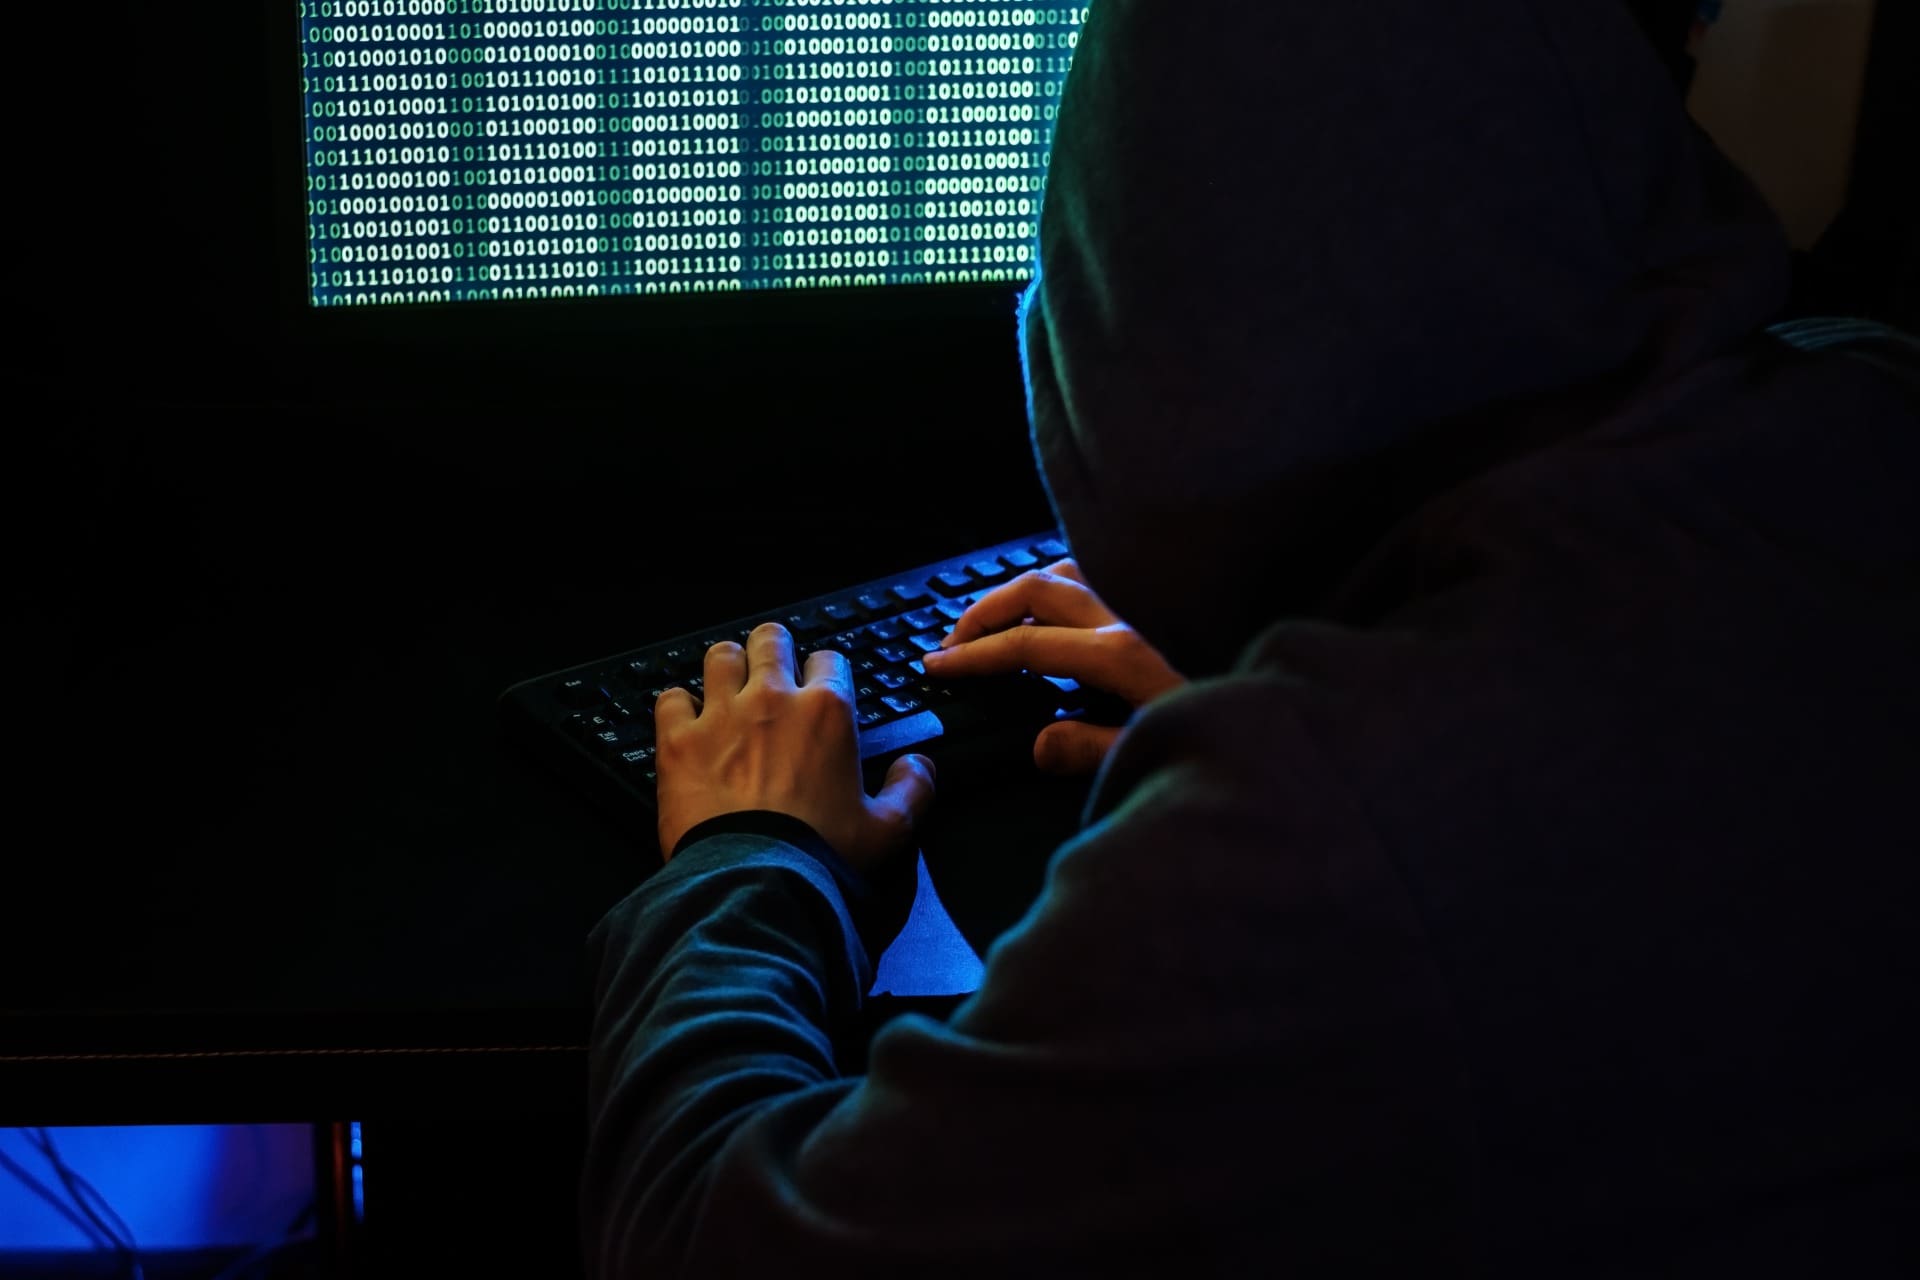 autoridades querem agir na prevencao do cibercrime junto de jovens menores